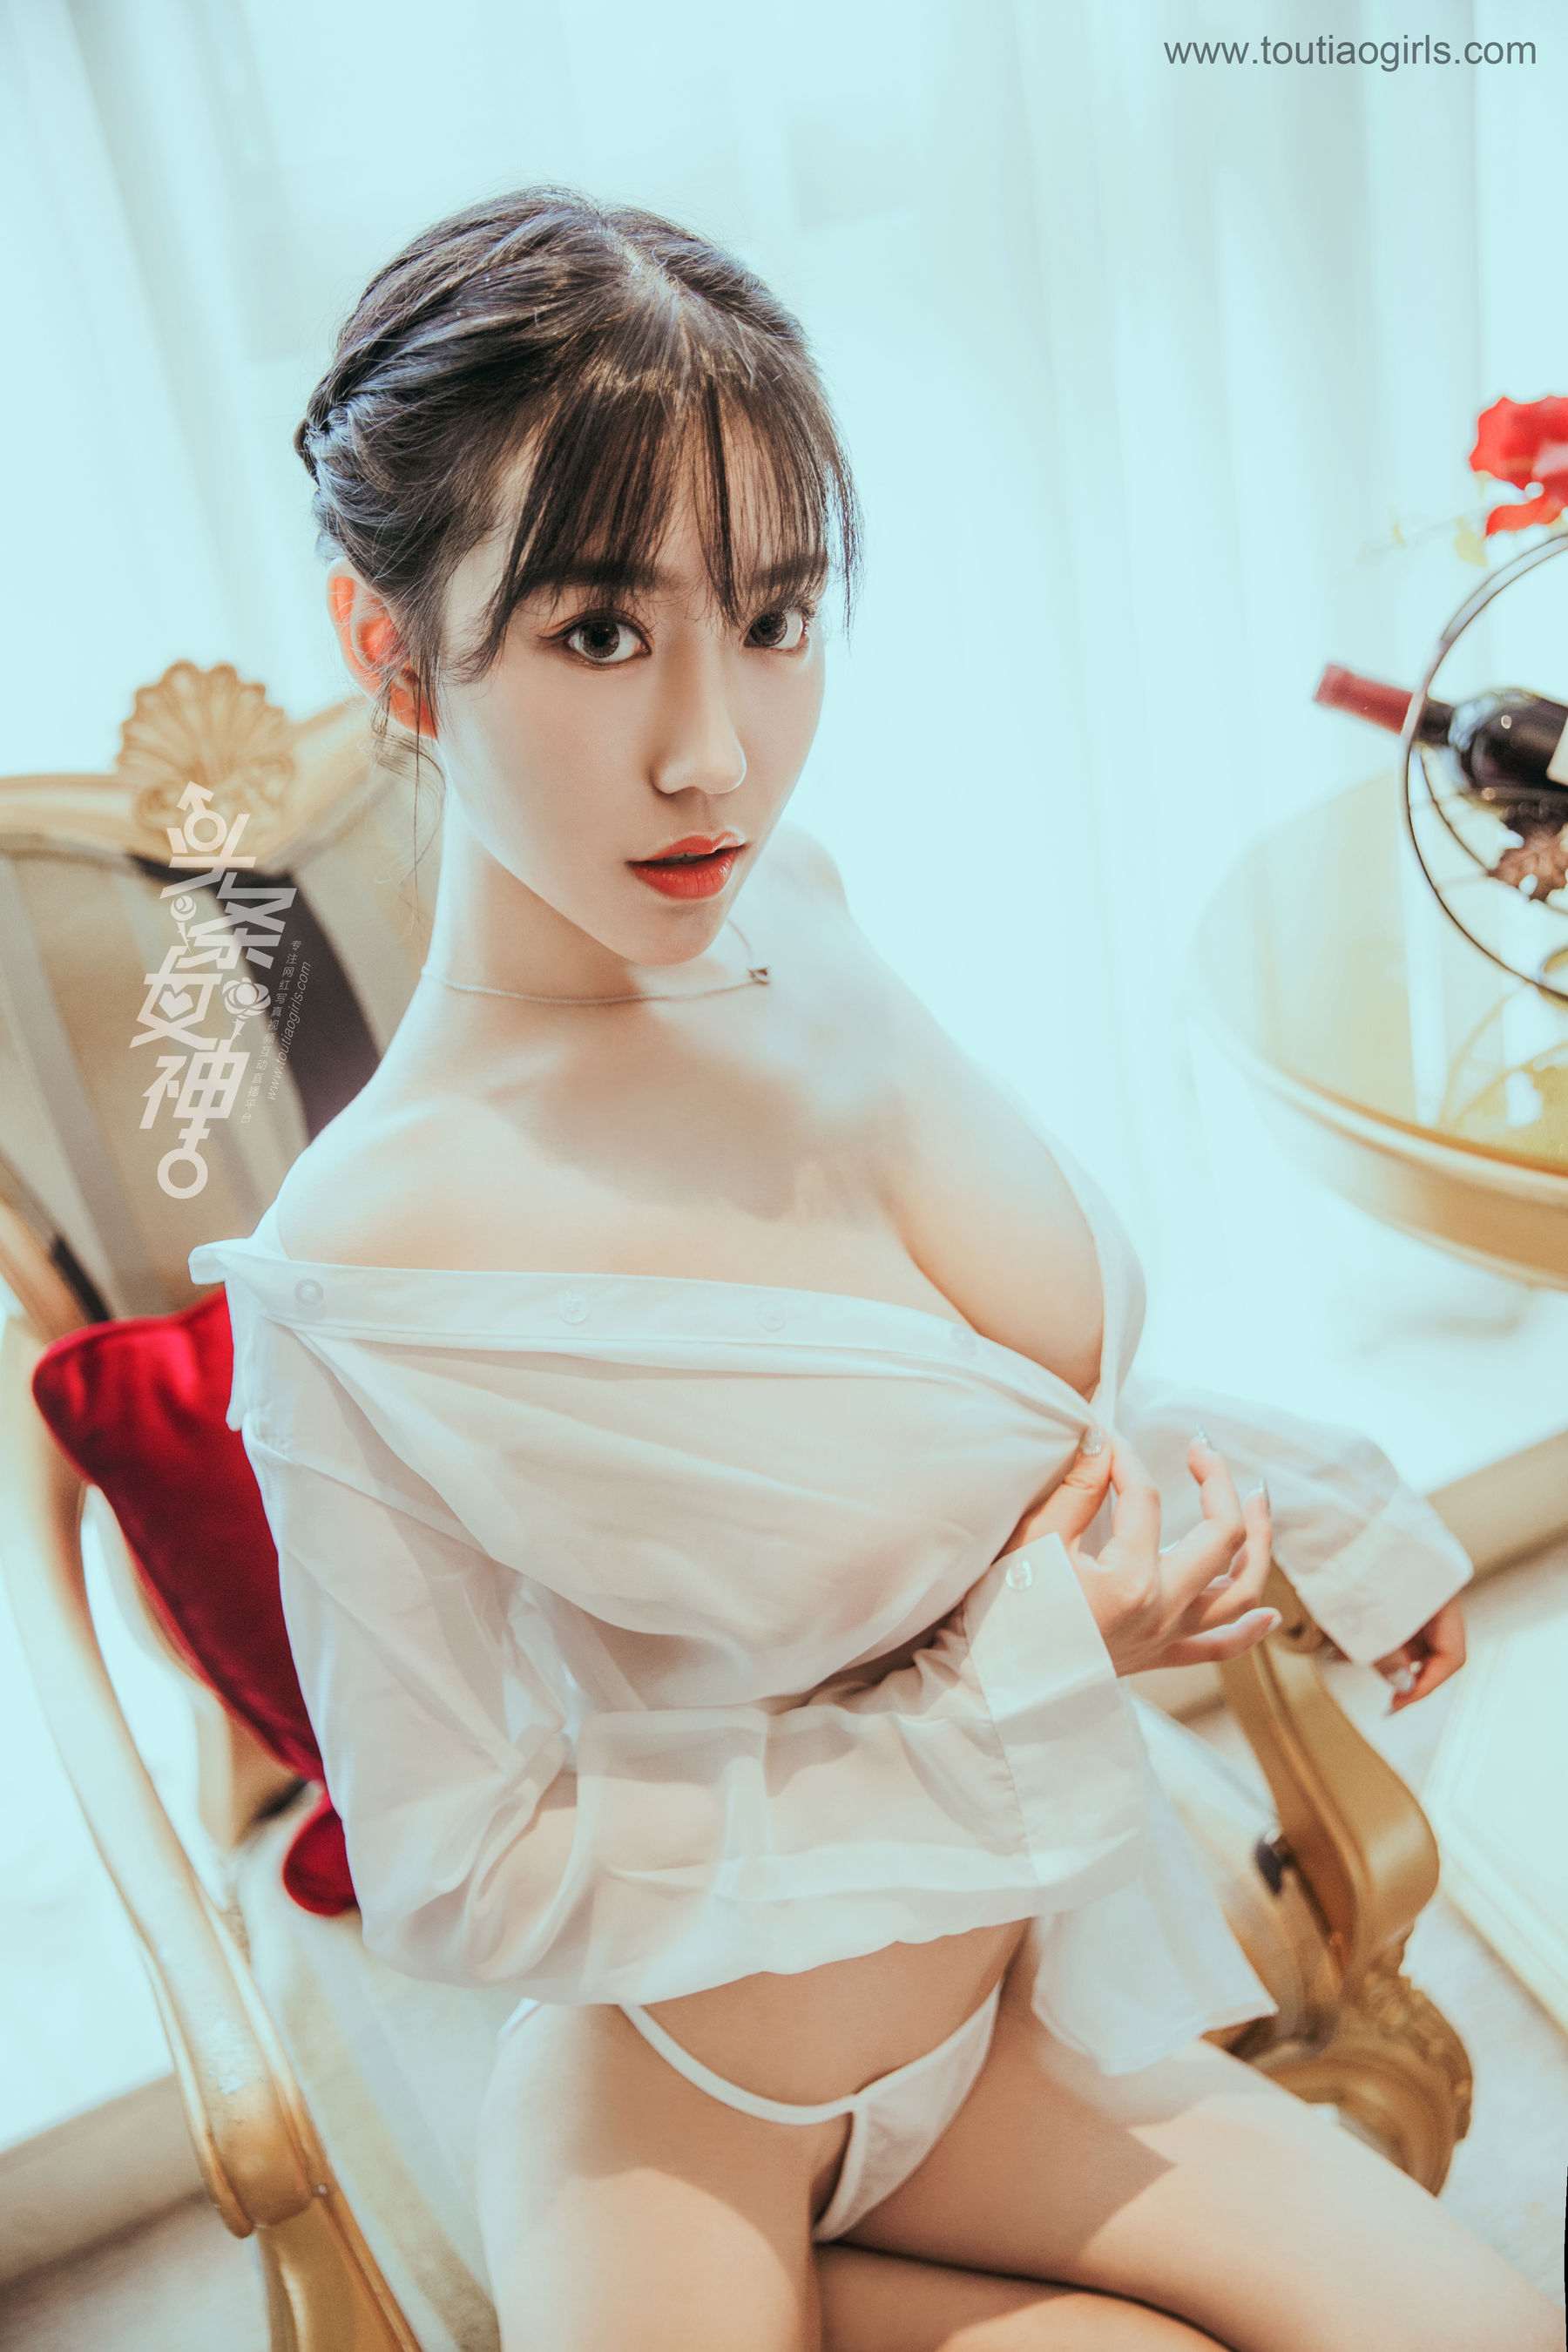 Chen Yifei's Qing Ben Beauty full version Toutiaogirls